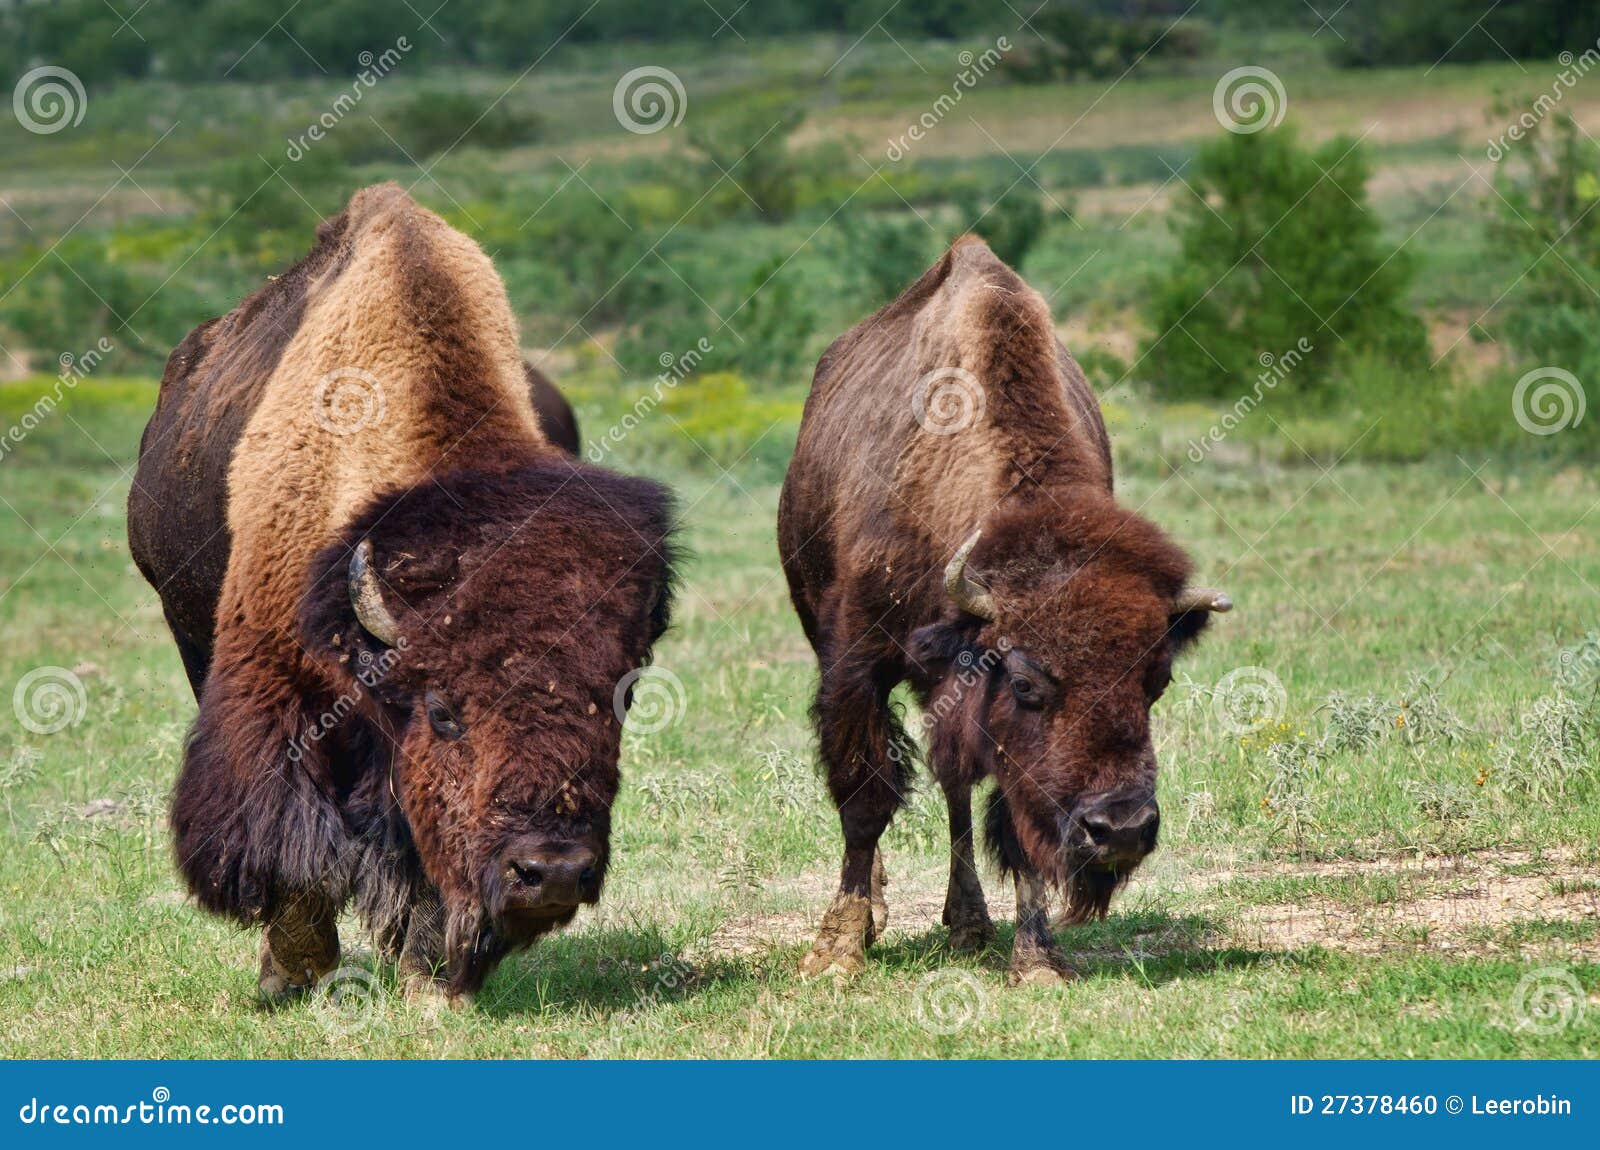 cow buffalo clipart - photo #33